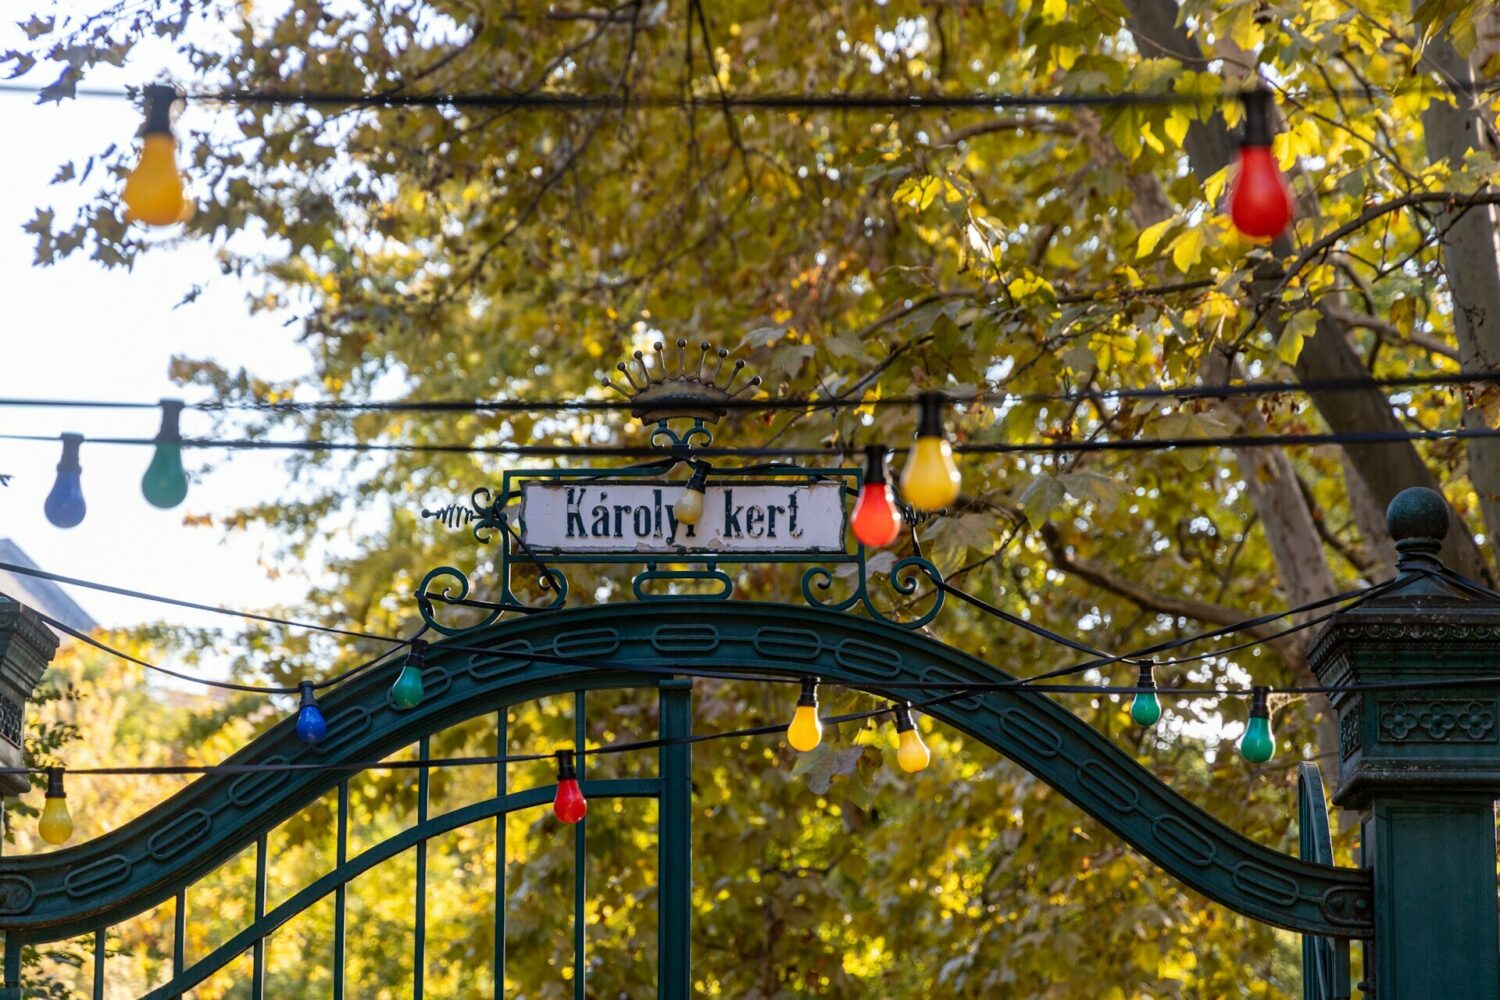 A Károlyi kert bejárata/ Entrance of Károlyi Kert